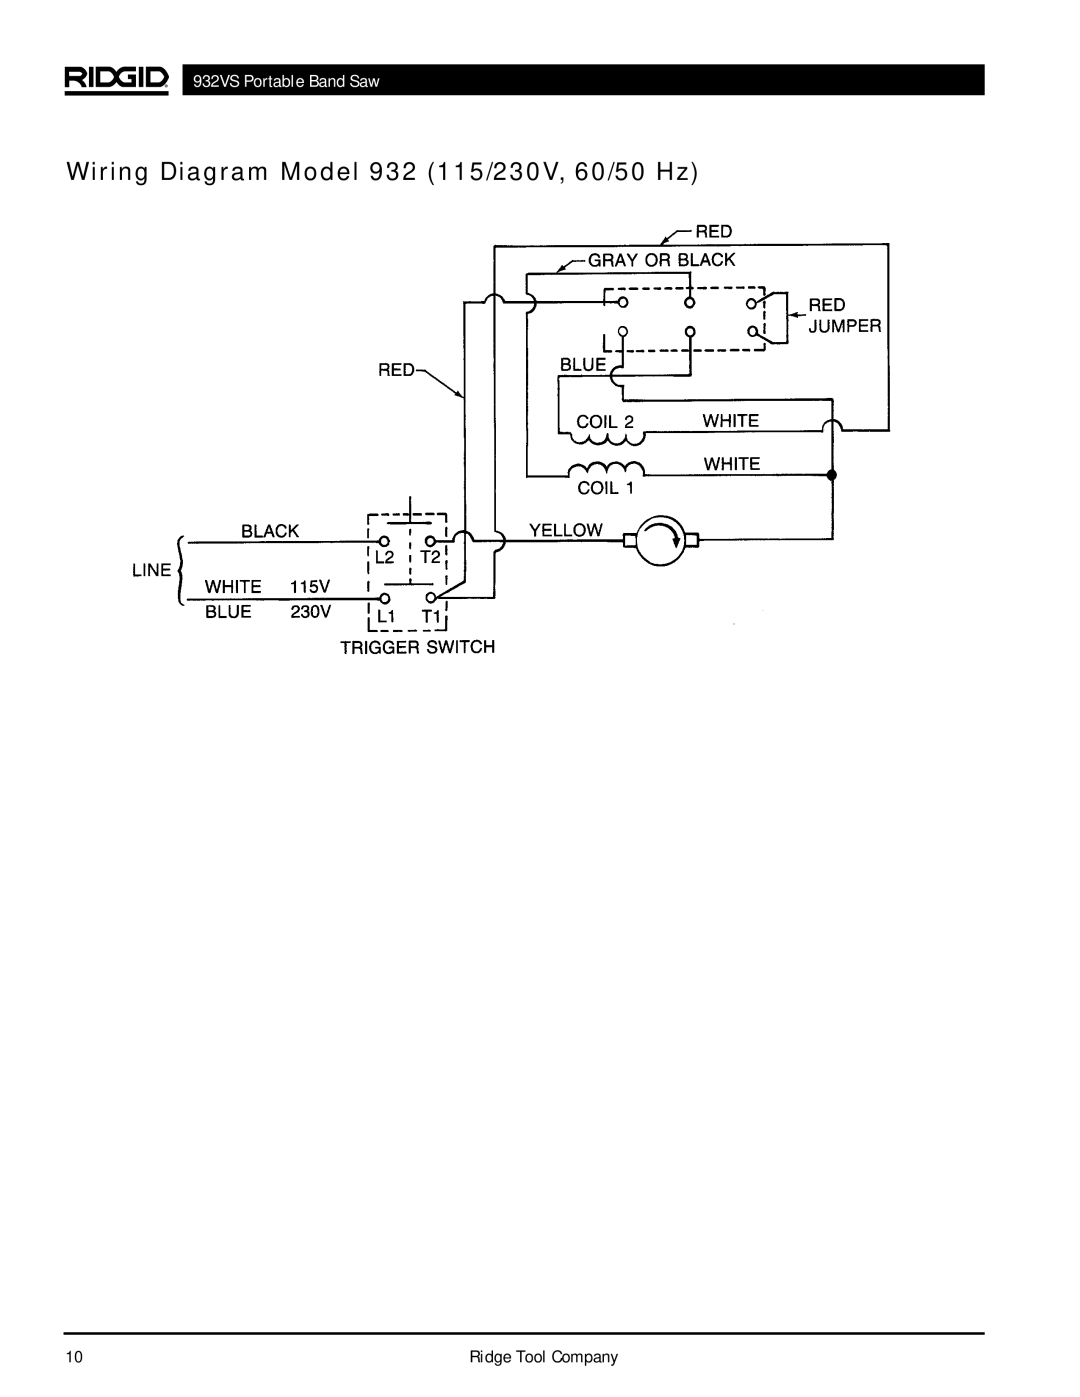 RIDGID manual Wiring Diagram Model 932 115/230V, 60/50 Hz, 932VS Portable Band Saw, Ridge Tool Company 